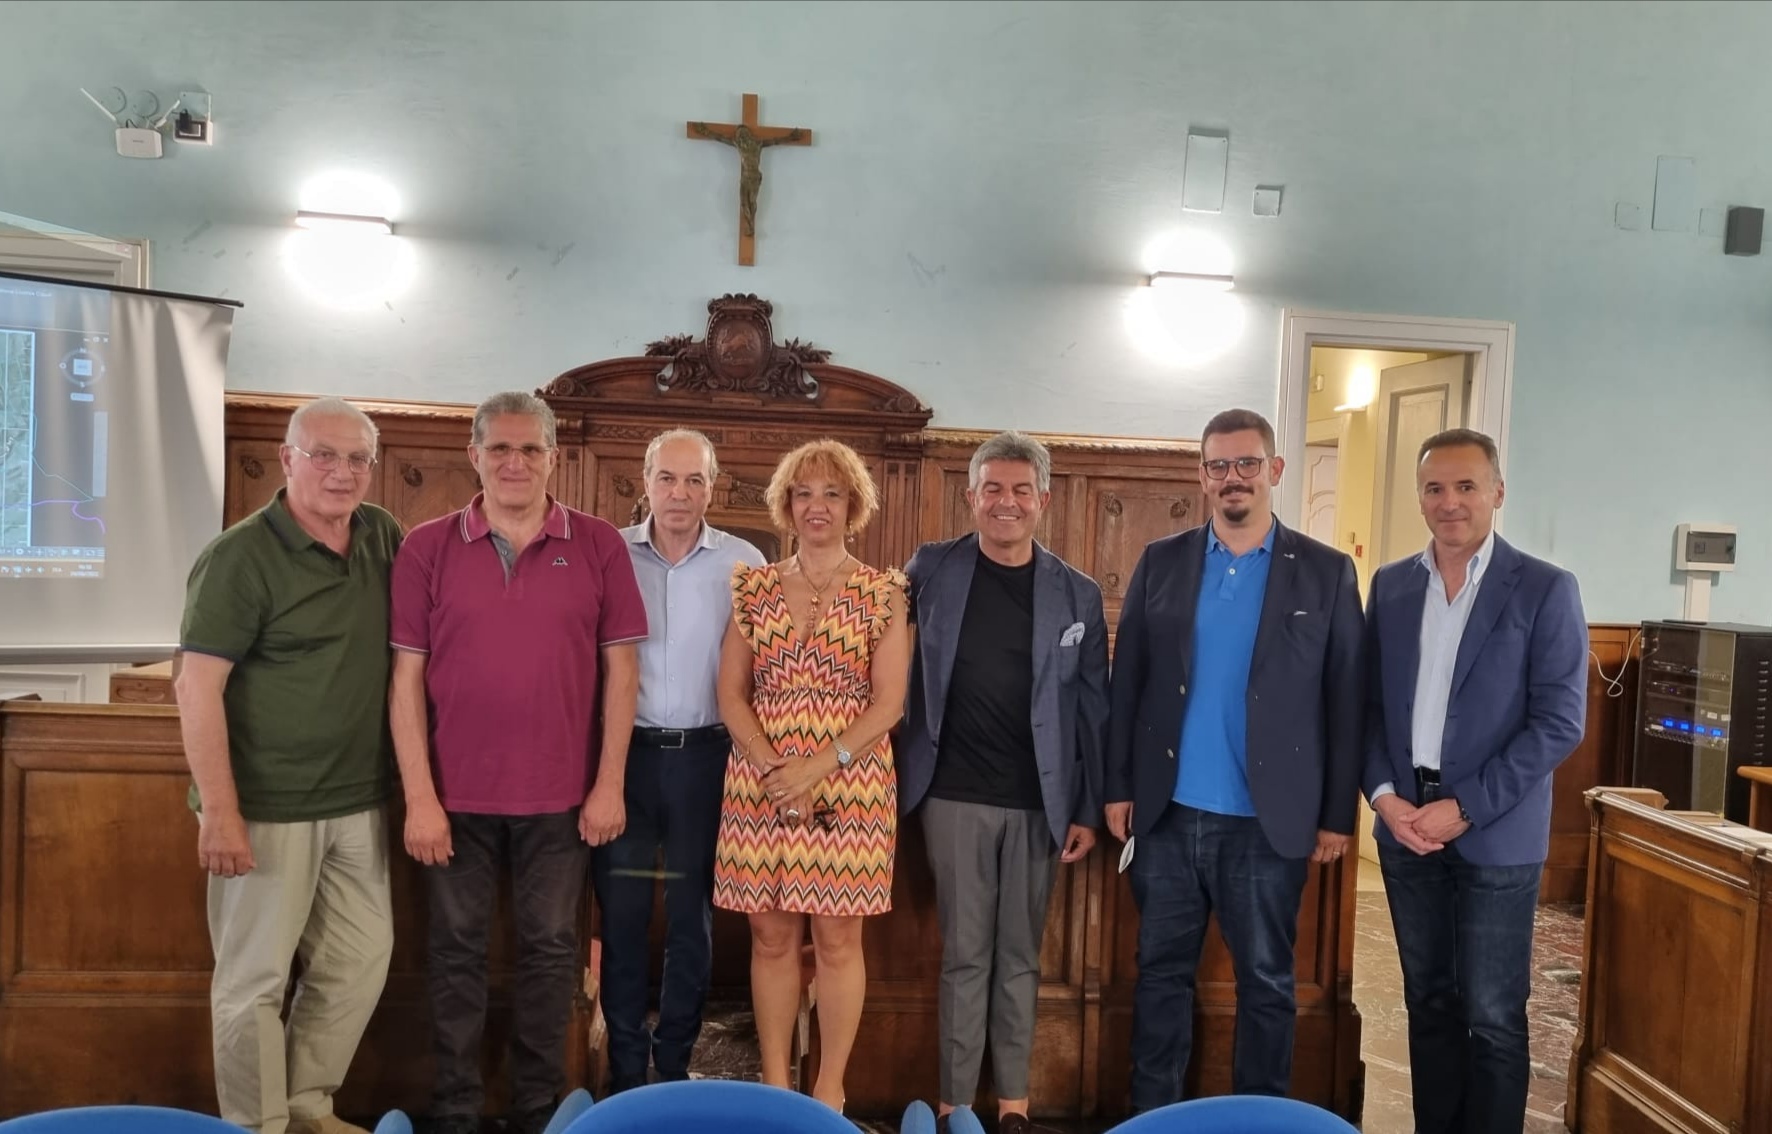 Strade, alla Rocca dei Rettori incontro tra sindaci per collegamenti interregionali Campania – Puglia